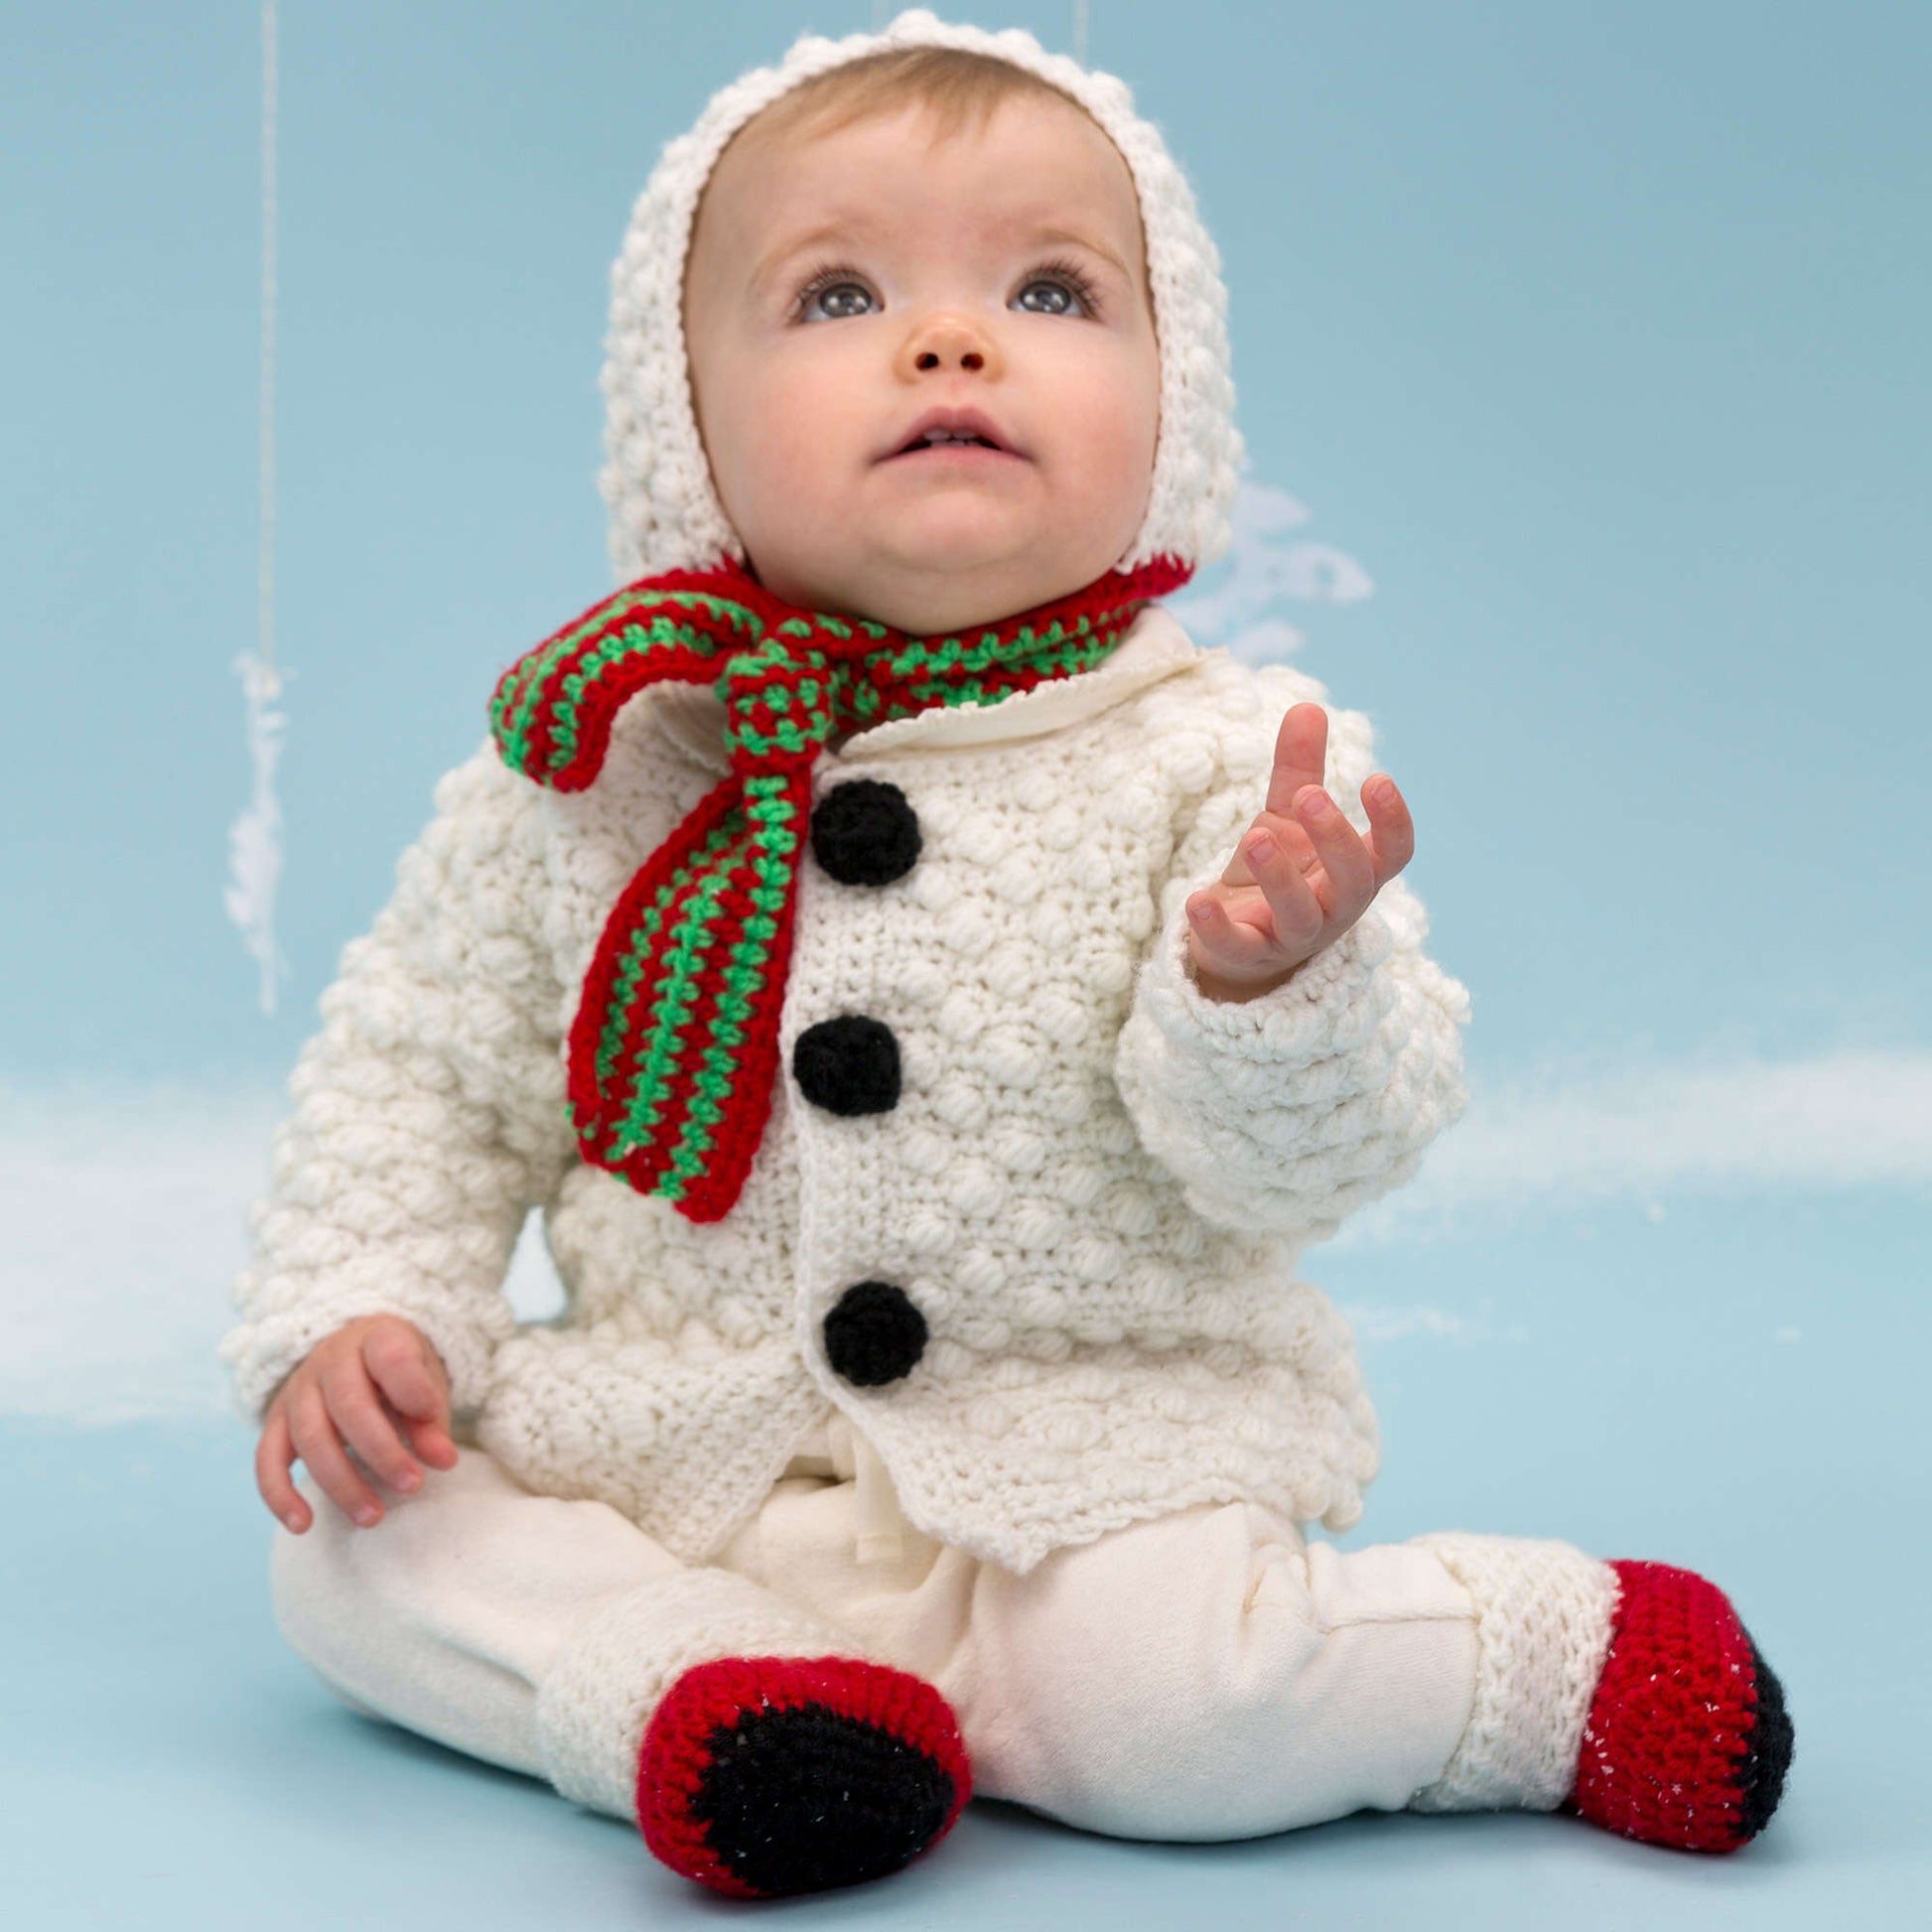 Free Red Heart Snowman Cutie Baby Set Crochet Pattern